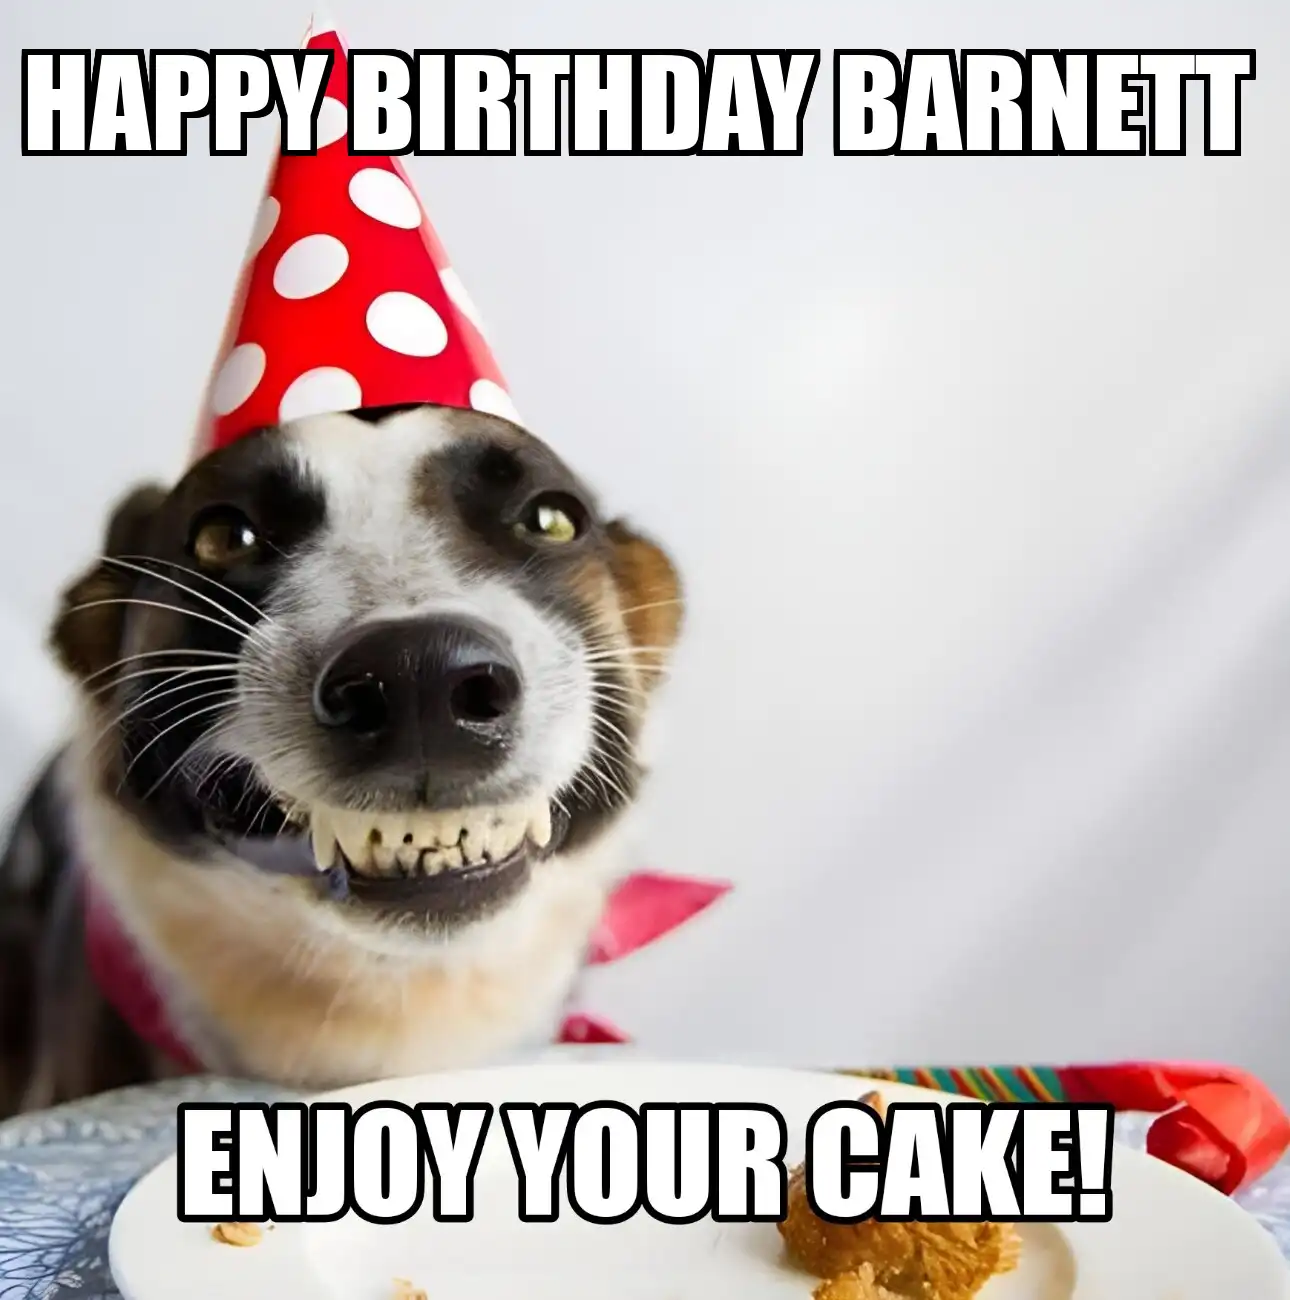 Happy Birthday Barnett Enjoy Your Cake Dog Meme